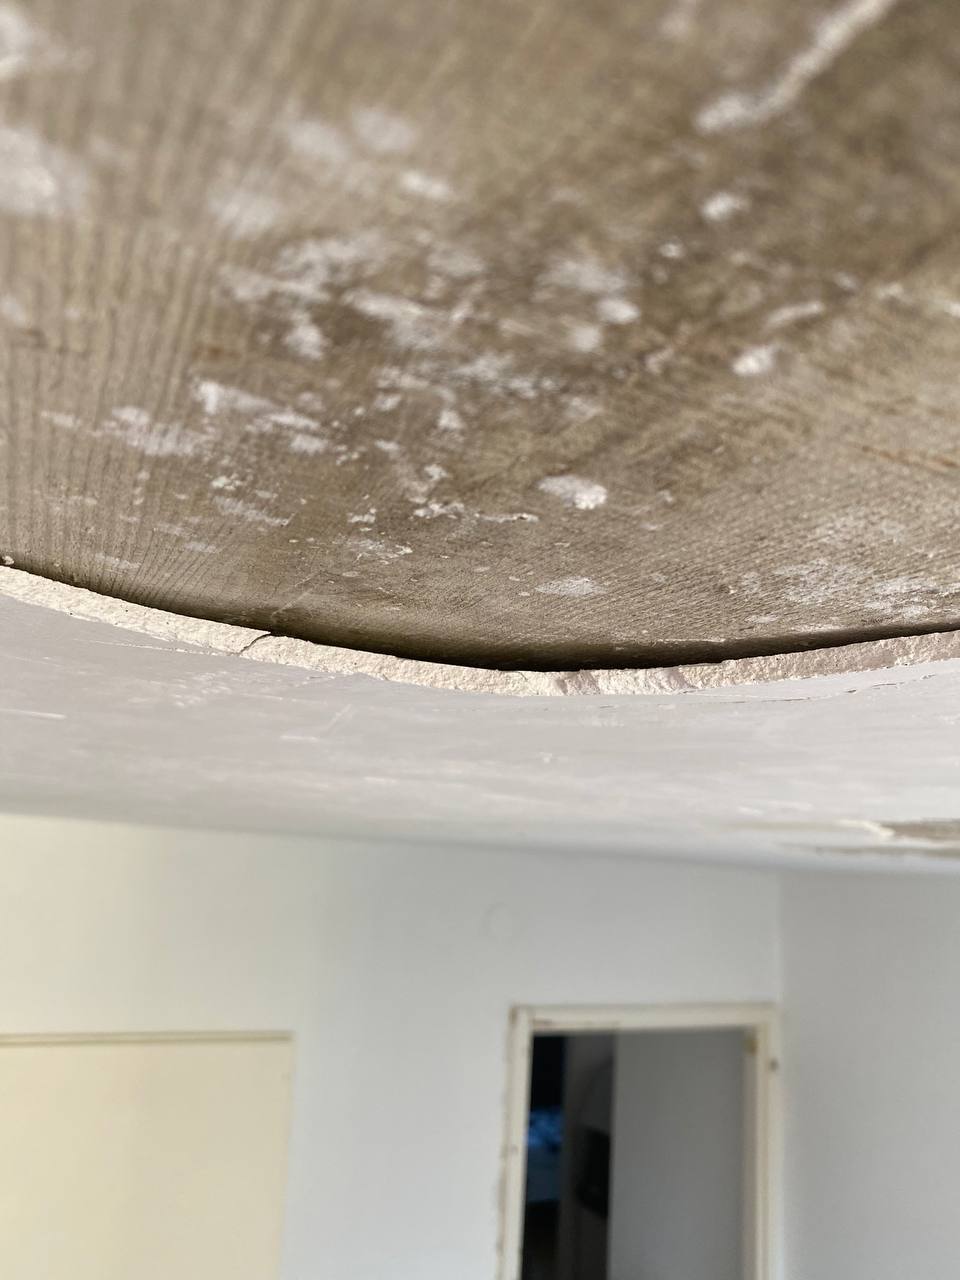 le risque de la chute du plâtre est imminente d'où l'obligation de piquer l'ensemble du plafond